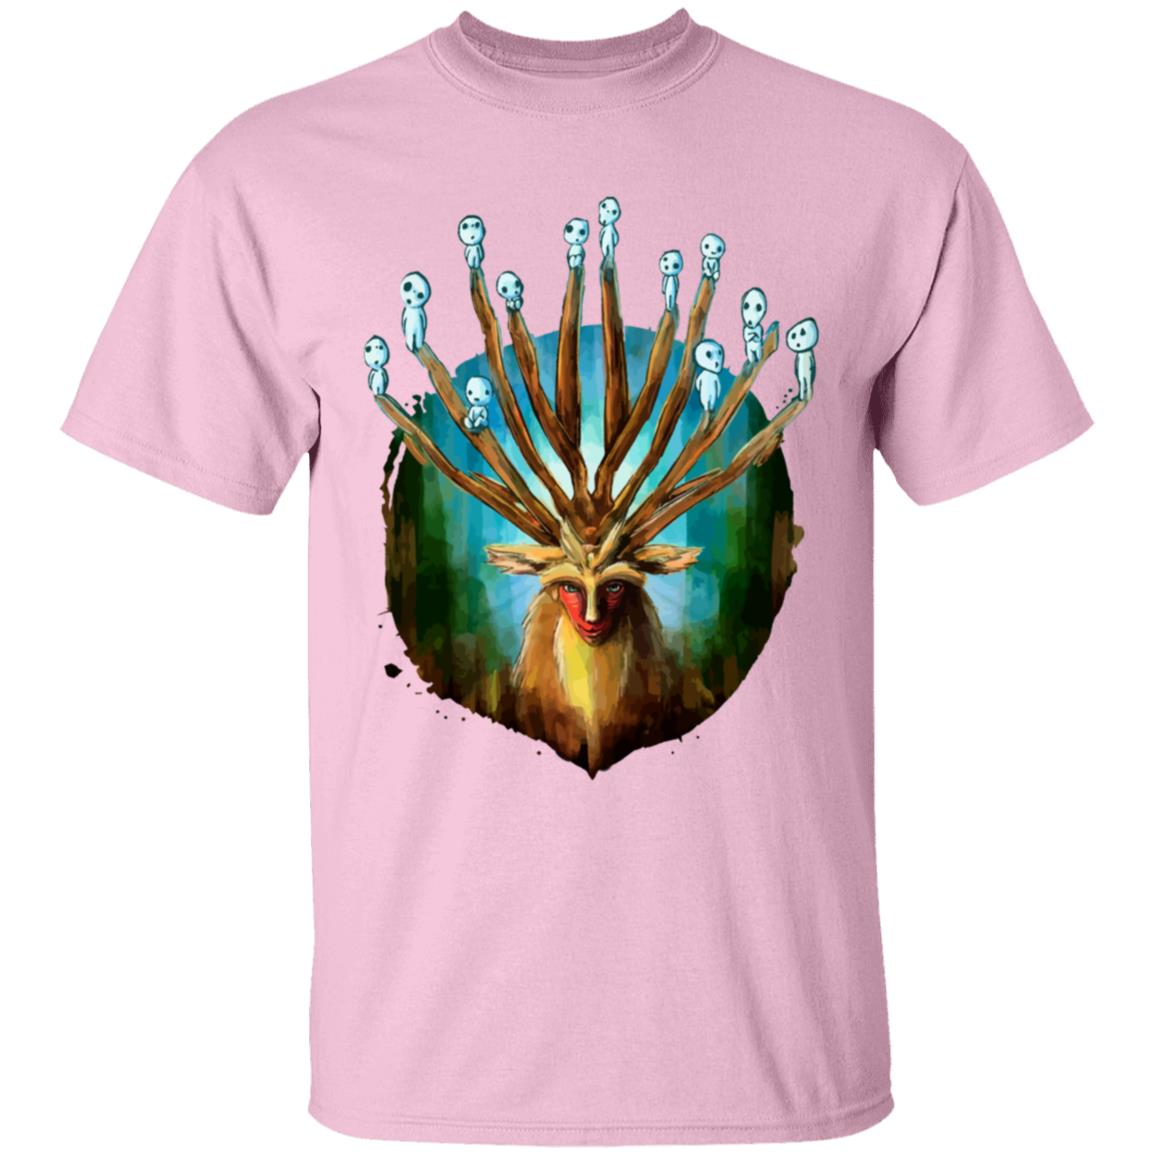 Princess Mononoke – Shishigami and The Tree Spirit T Shirt for Kid Ghibli Store ghibli.store